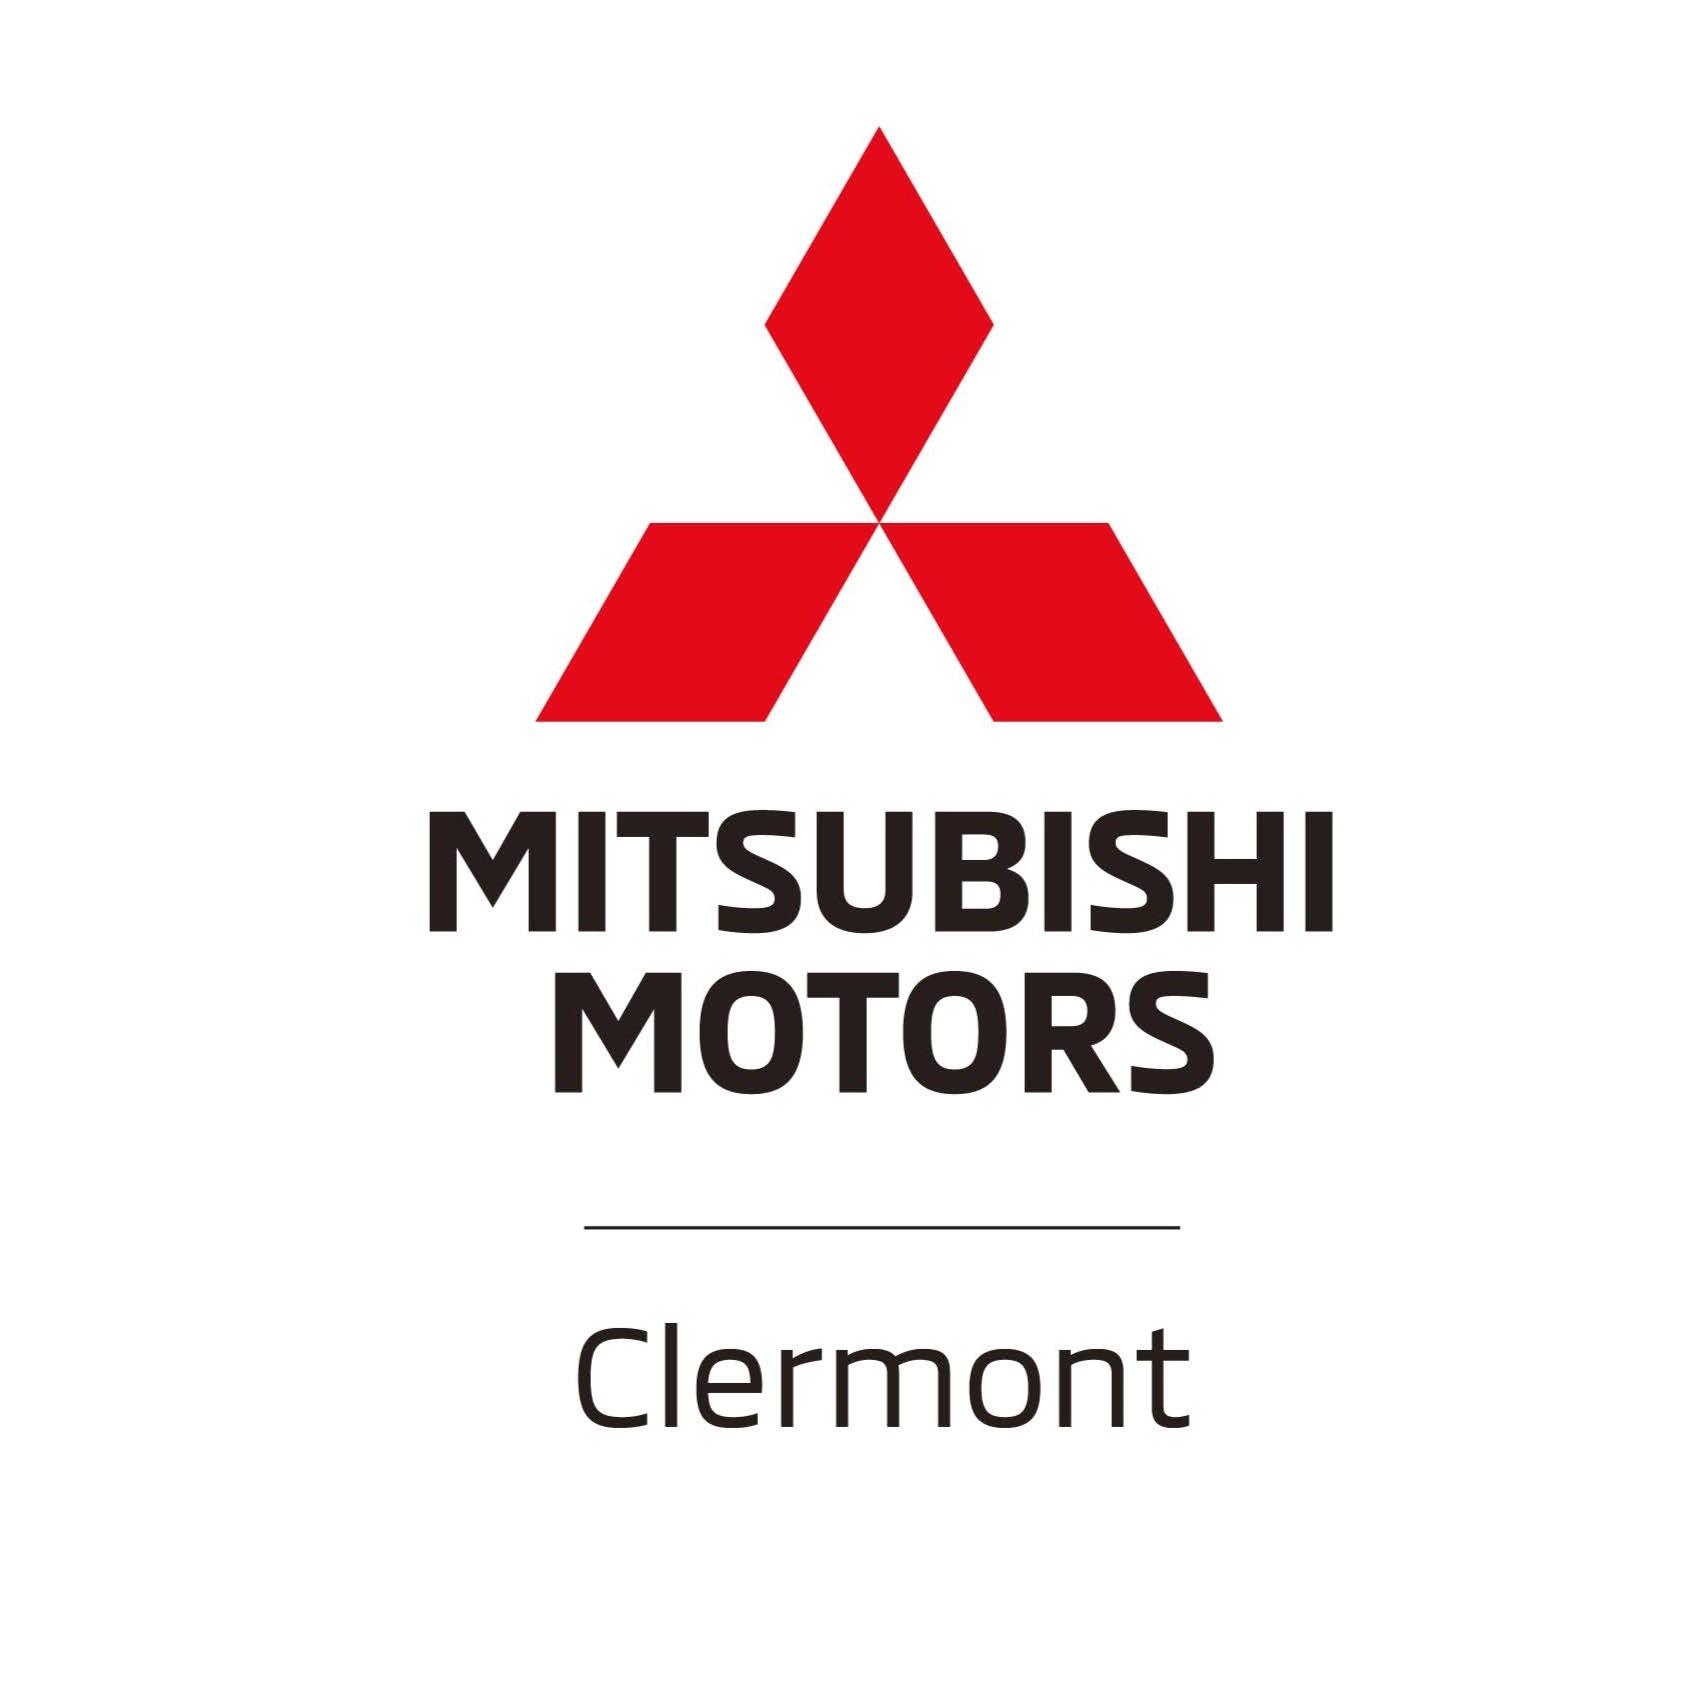 Mitsubishi Clermont Ferrand